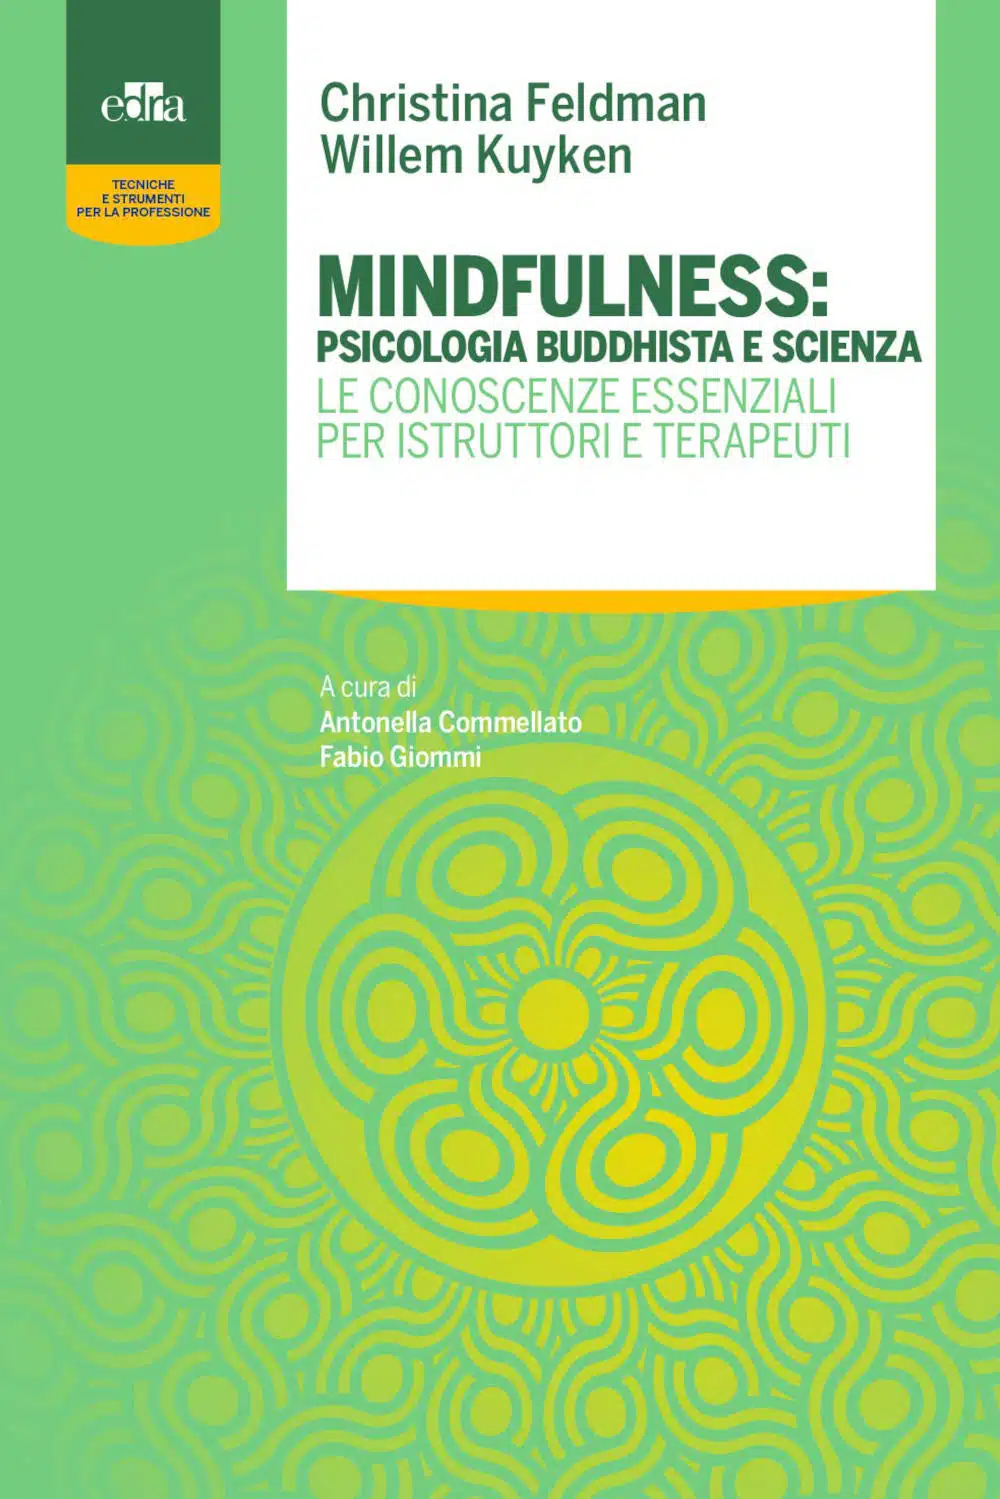 Mindfulness: psicologia buddhista e scienza (2021) - Recensione del libro